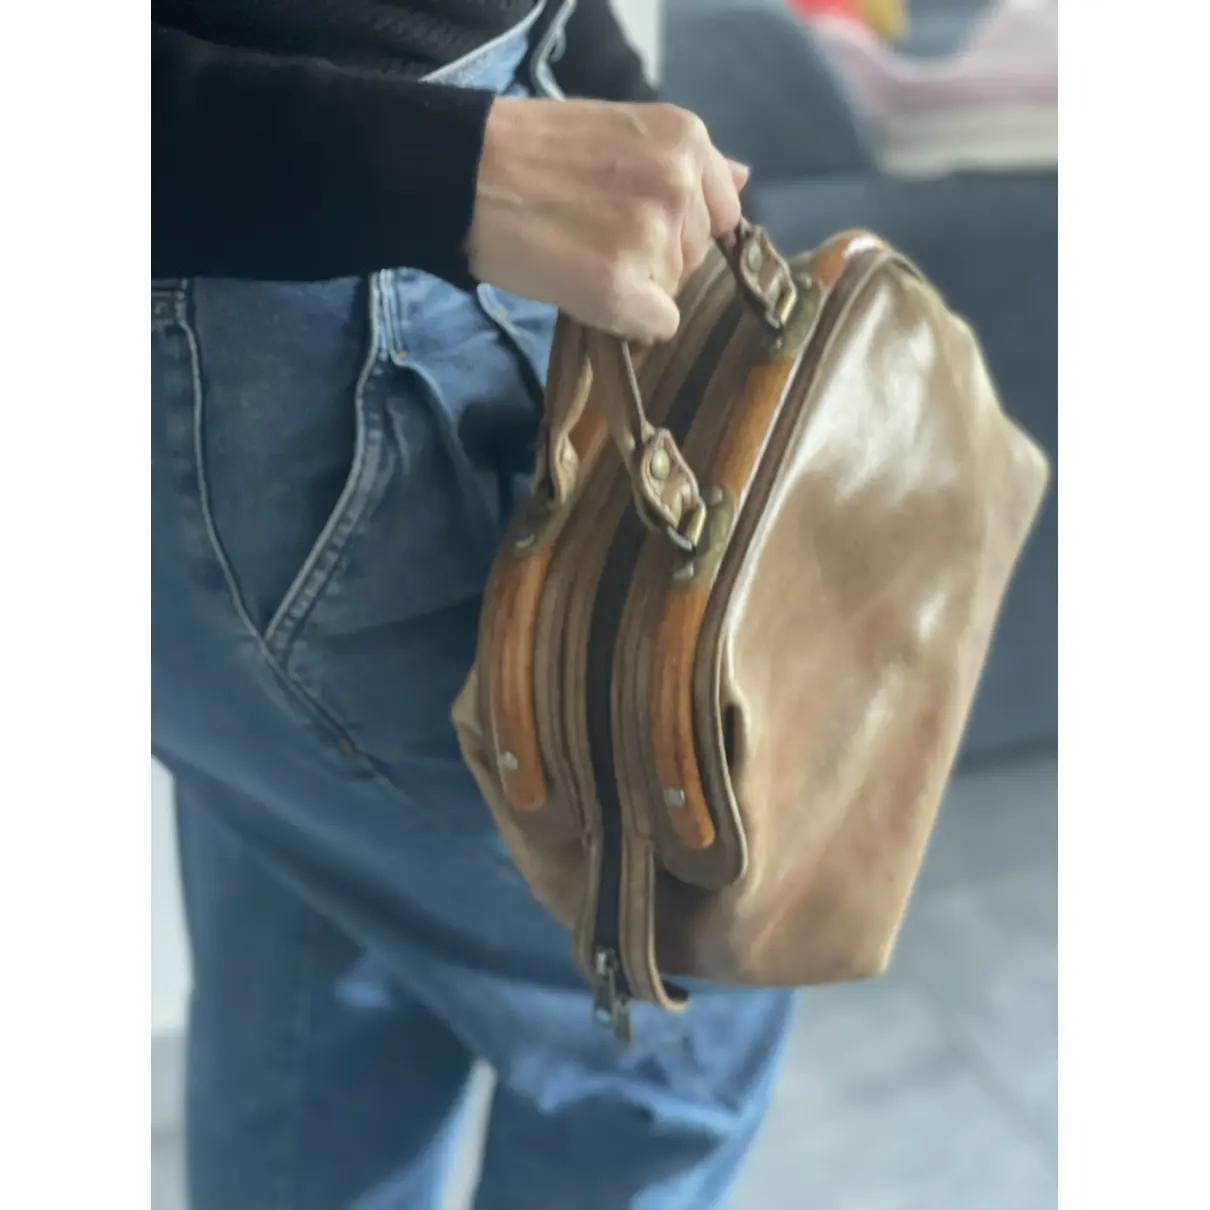 Leather handbag Aldo Tramontano - Vintage